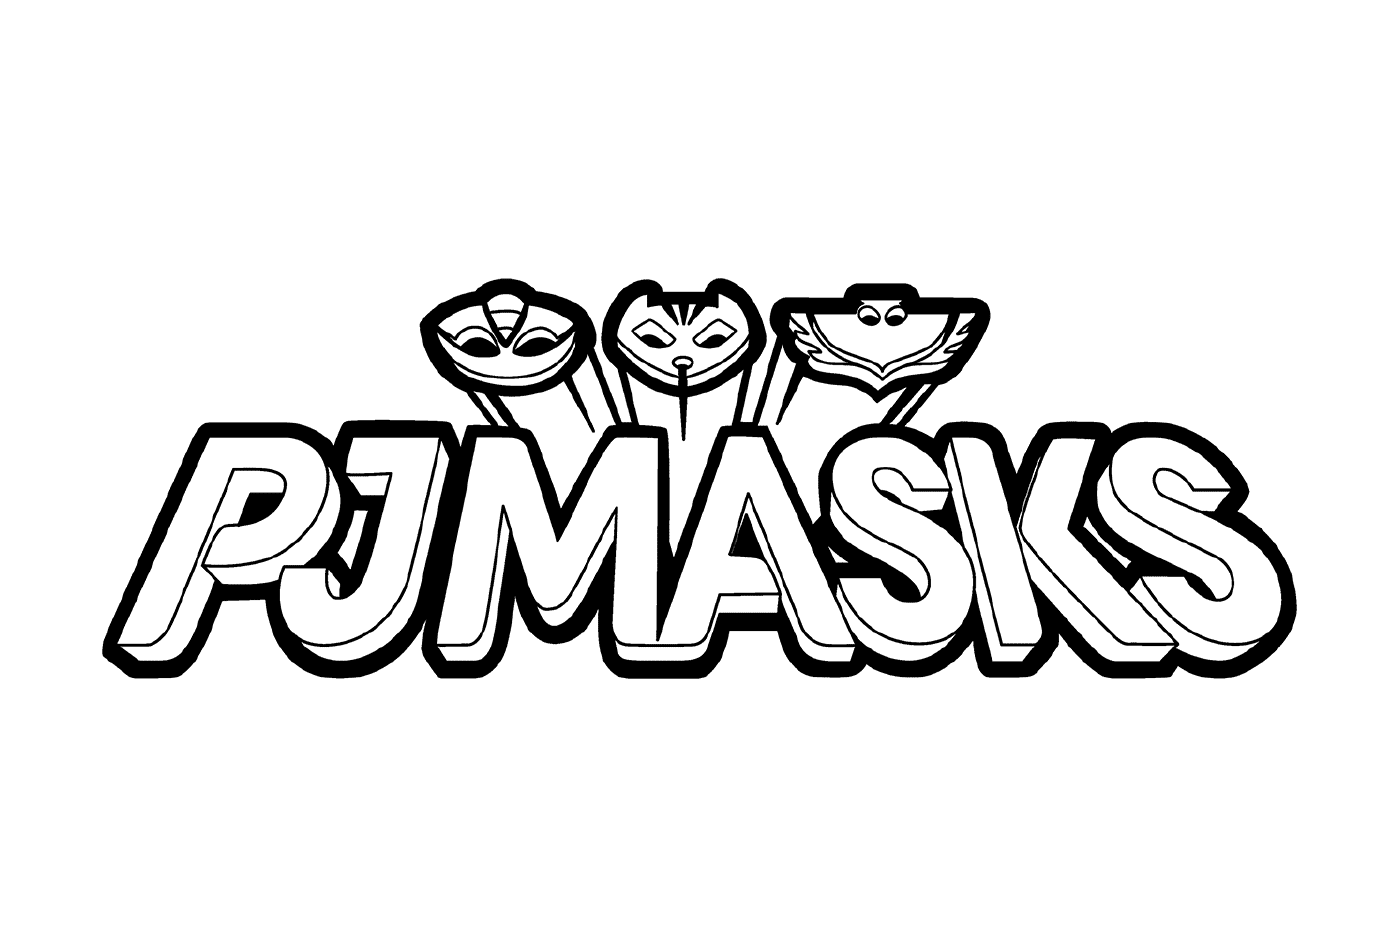  Logotipo Pijamascos en blanco y negro 